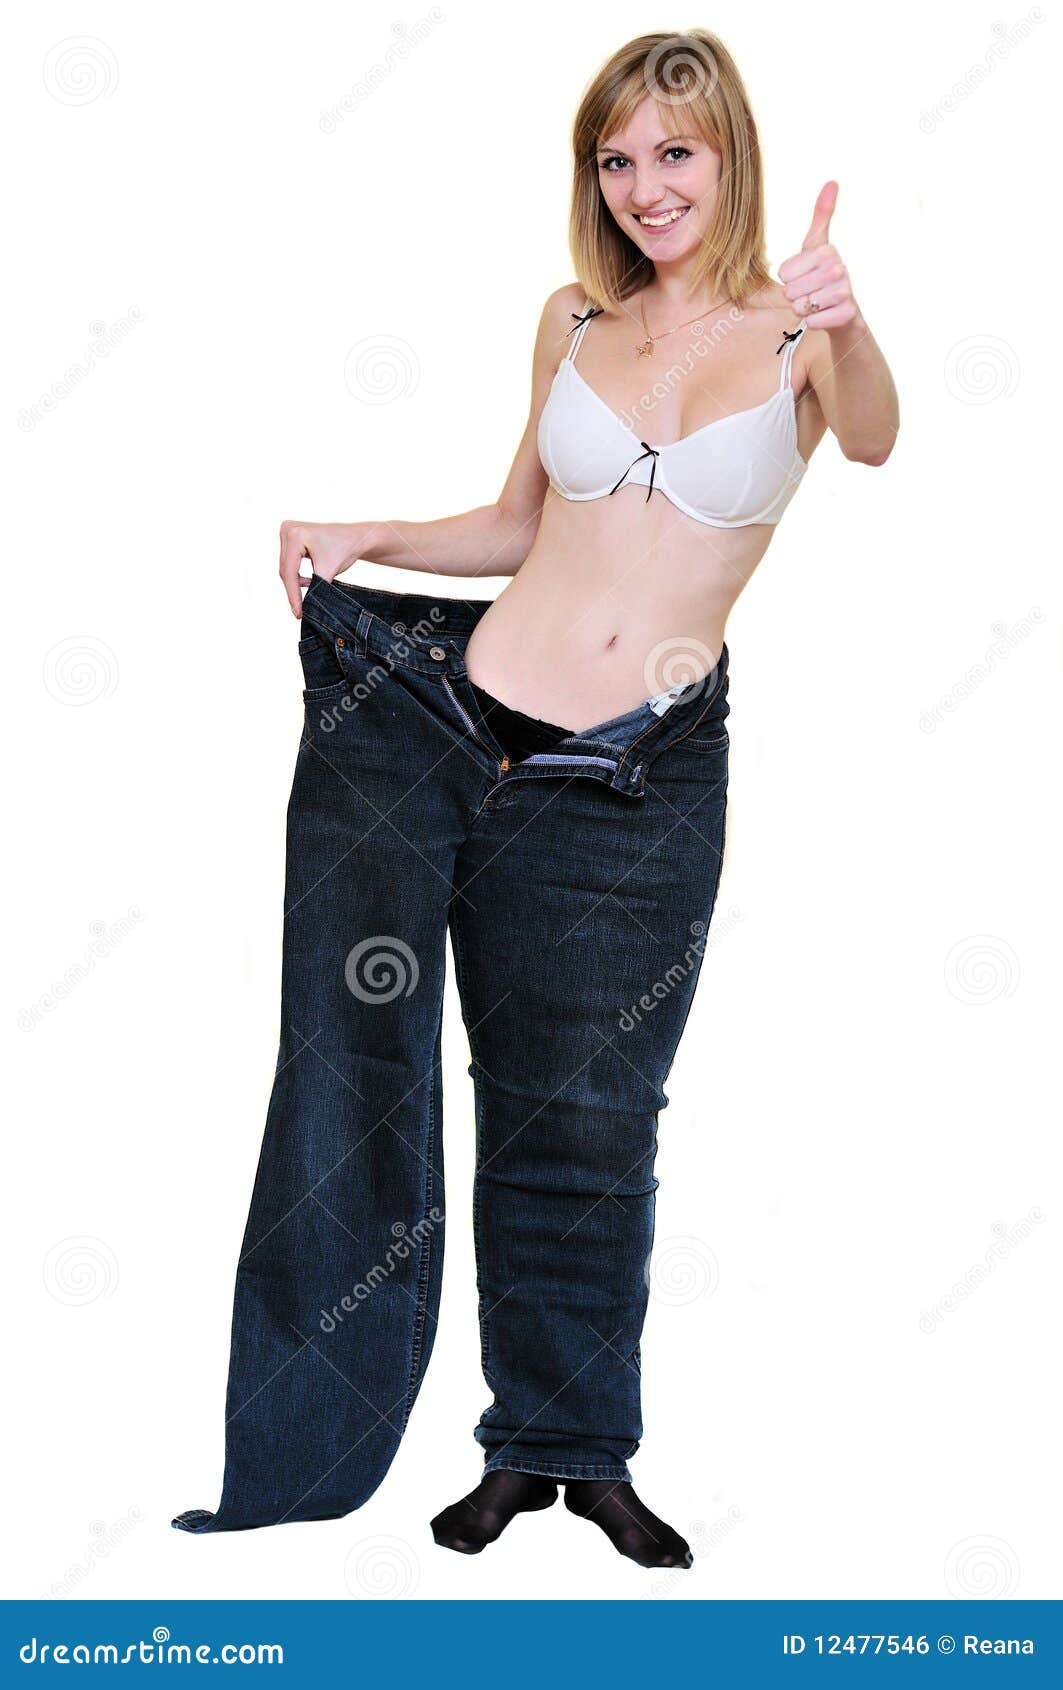 5,143 Girl Hot Pants Stock Photos